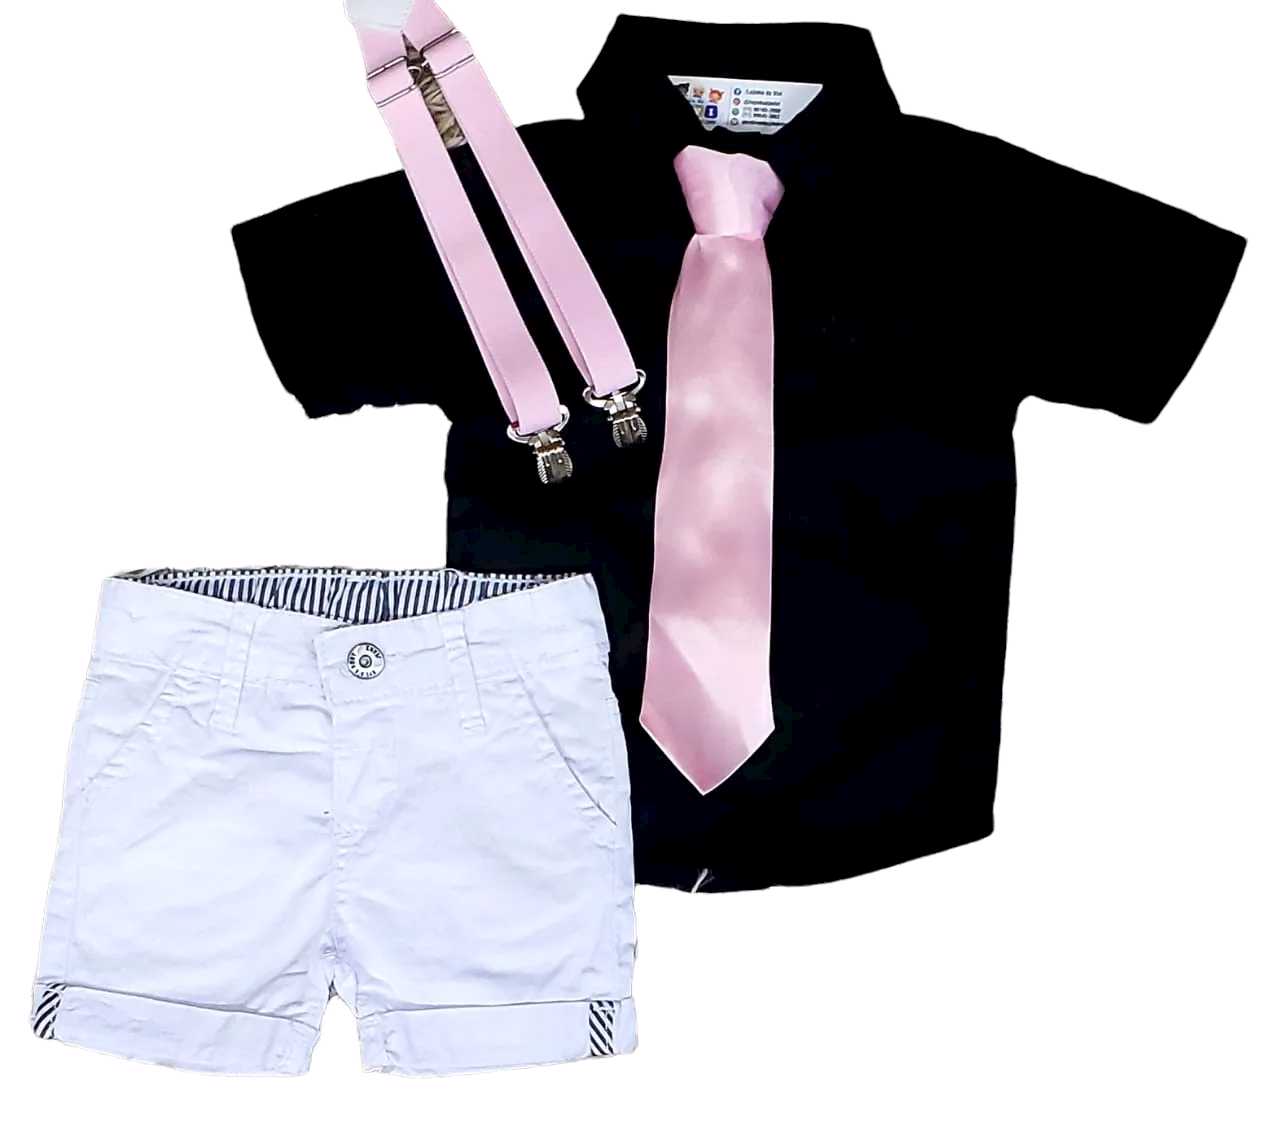 Bermuda Branca com Suspensório e Camisa Preta com Gravata